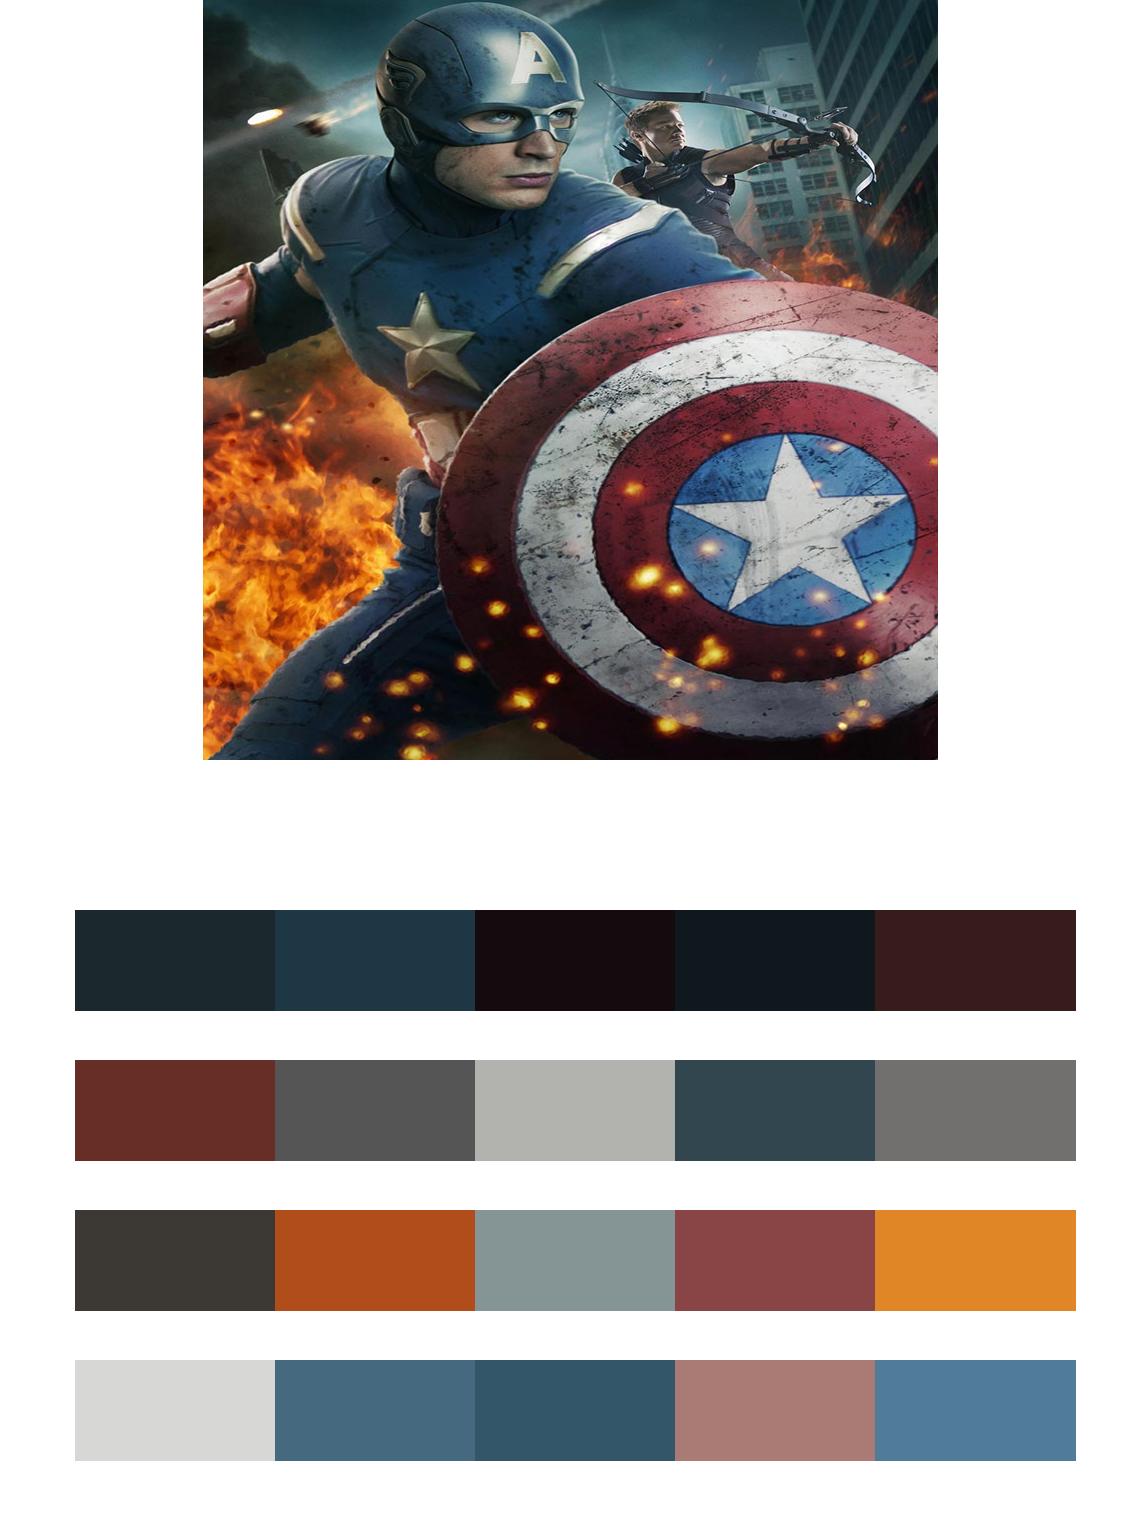 Капитан Америка и Соколиный глаз цвета